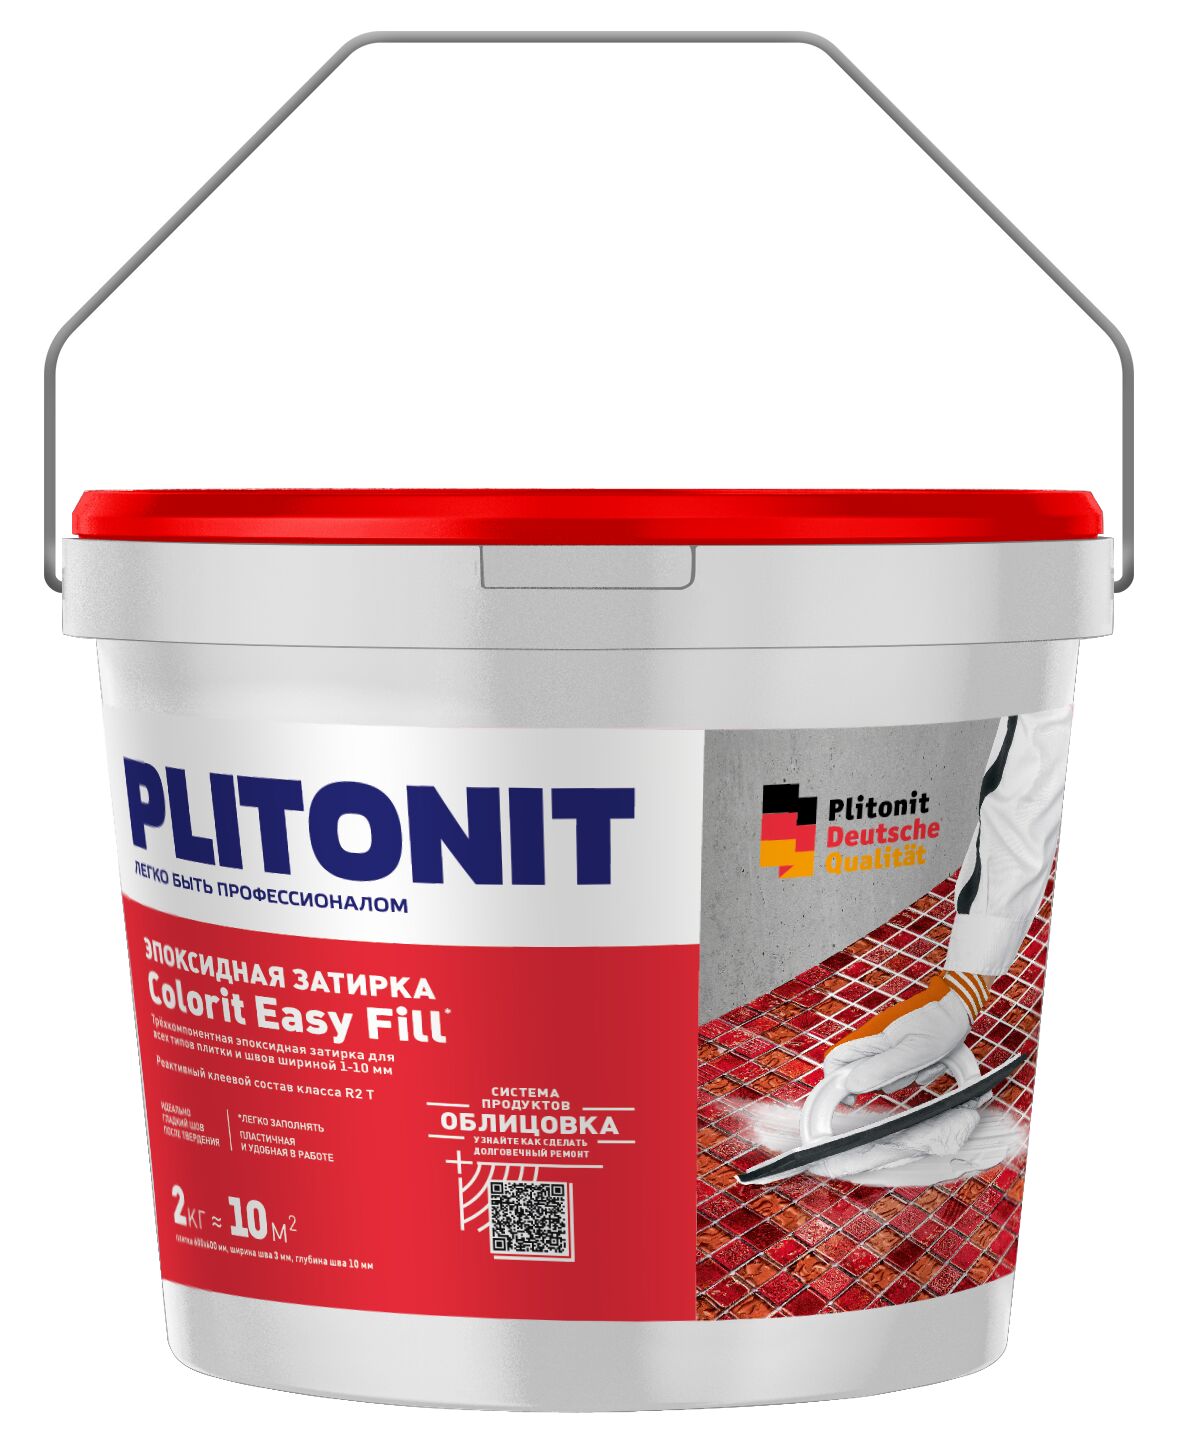 PLITONIT Colorit EasyFill БЕЖЕВЫЙ - 2 эпоксидная затирка для межплиточных швов и реактивный клей для плитки, PLITONIT Colorit EasyFill БЕЖЕВЫЙ - 2 эпоксидная затирка для межплиточных швов и реактивный клей для плитки